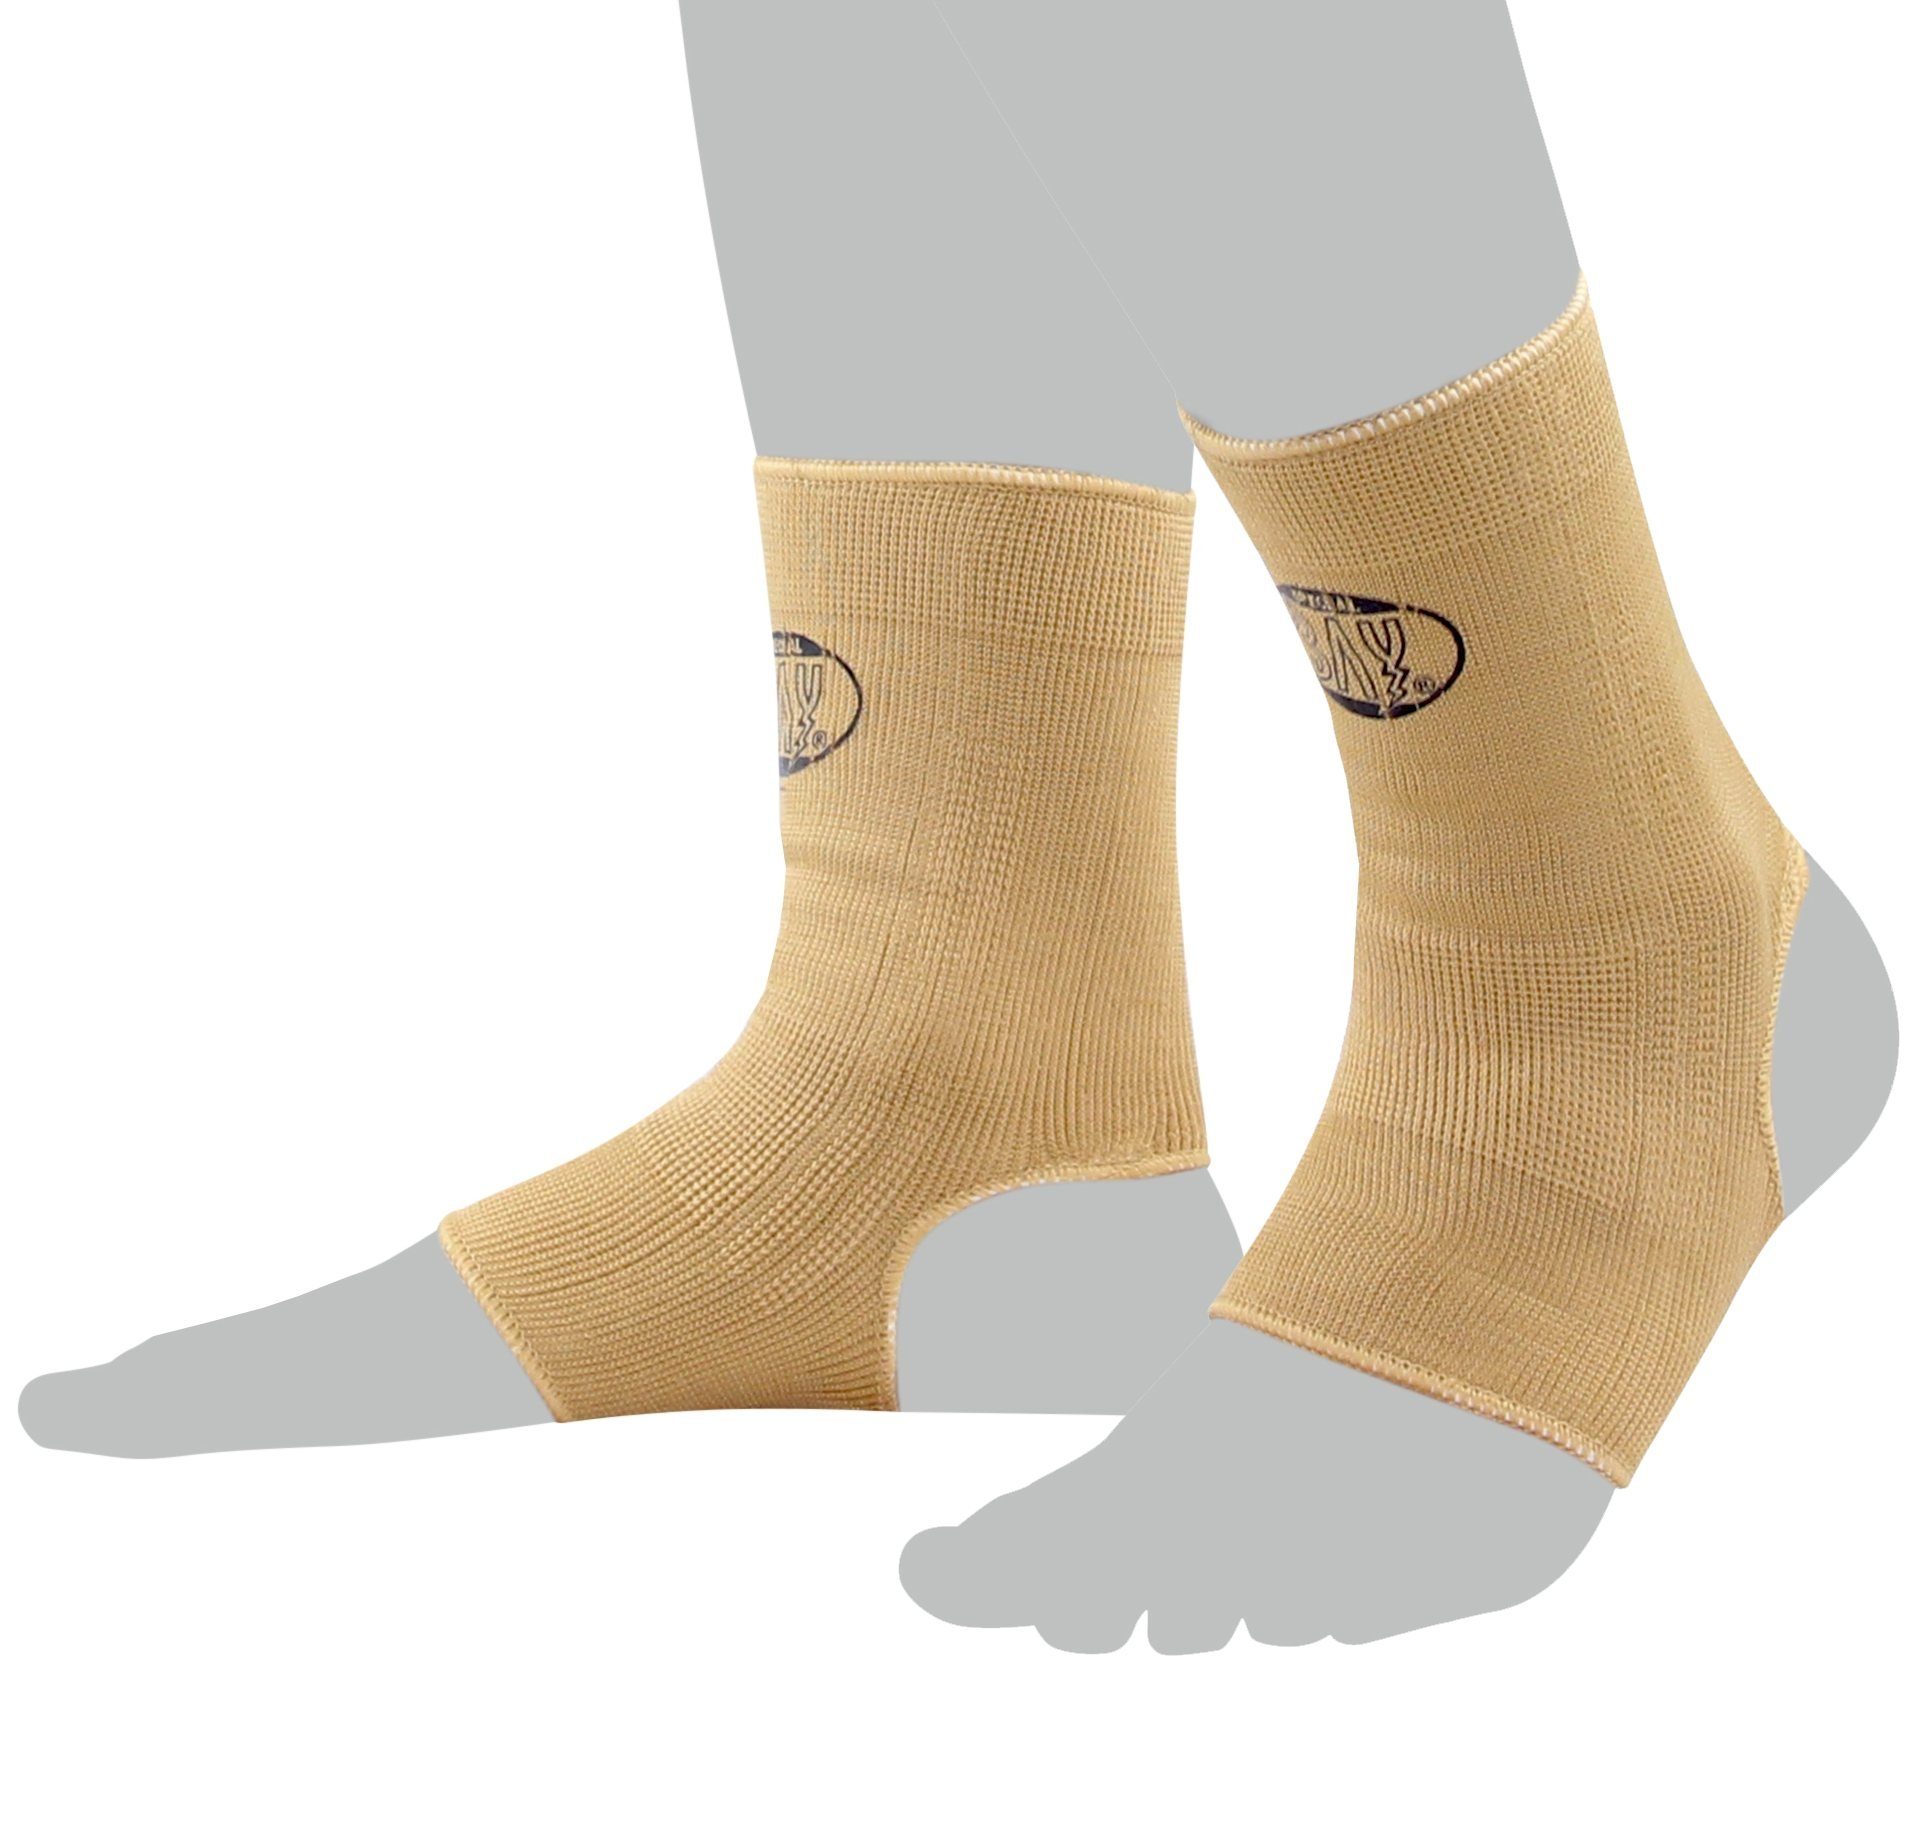 BAY-Sports Fußbandage »Knöchelbandage Fußgelenkbandage Sprunggelenk Paar«,  Anatomische Passform, kann rechts und links getragen werden, Kompression,  XS - XL